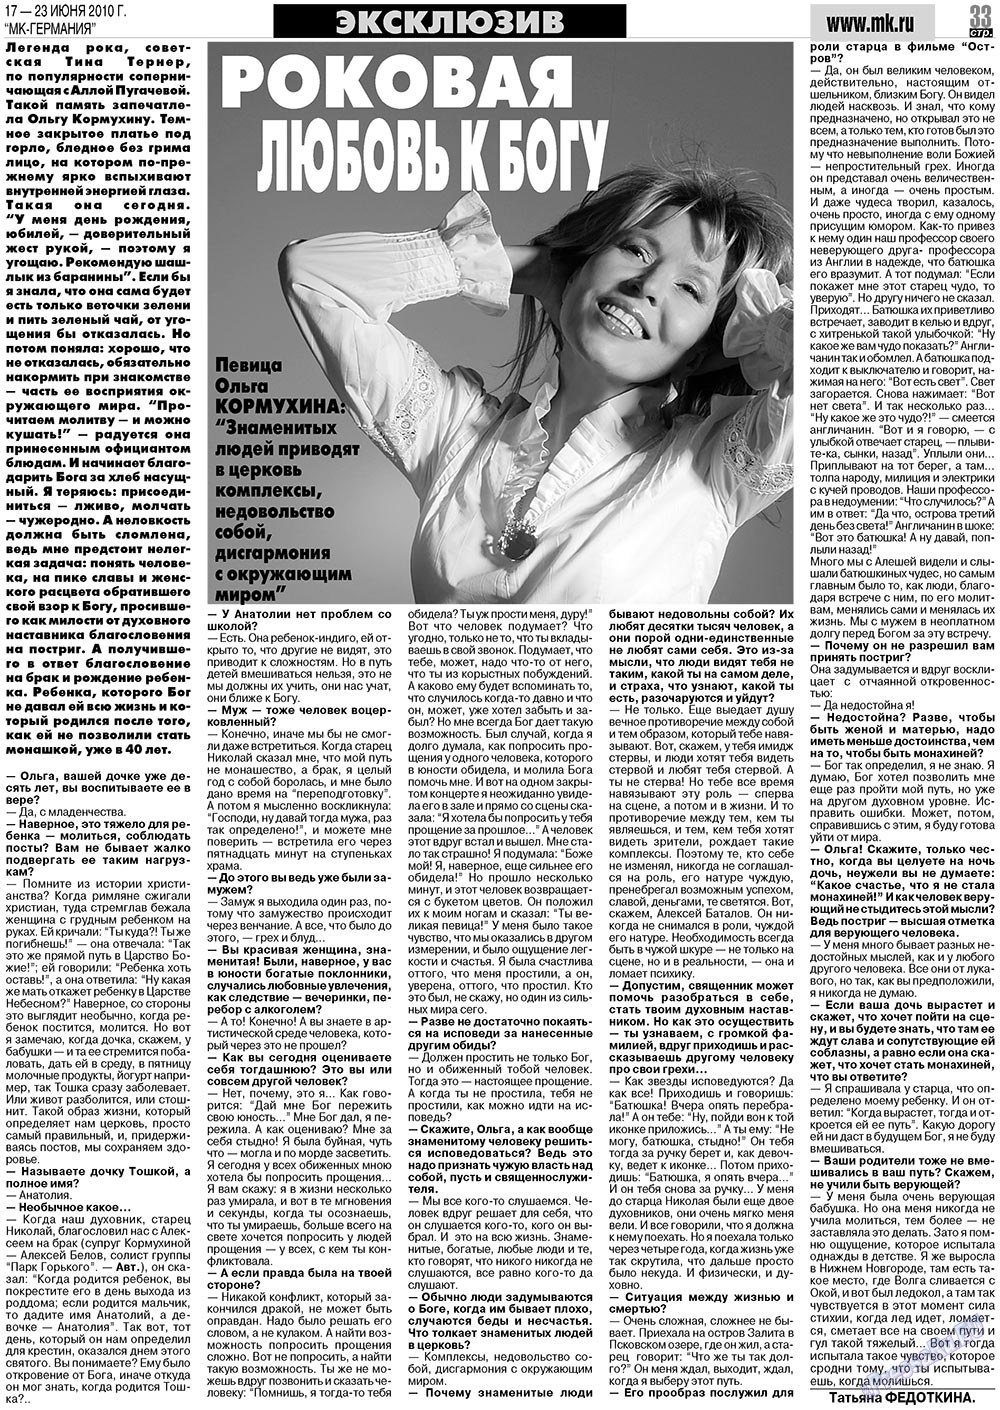 МК-Германия (газета). 2010 год, номер 25, стр. 33